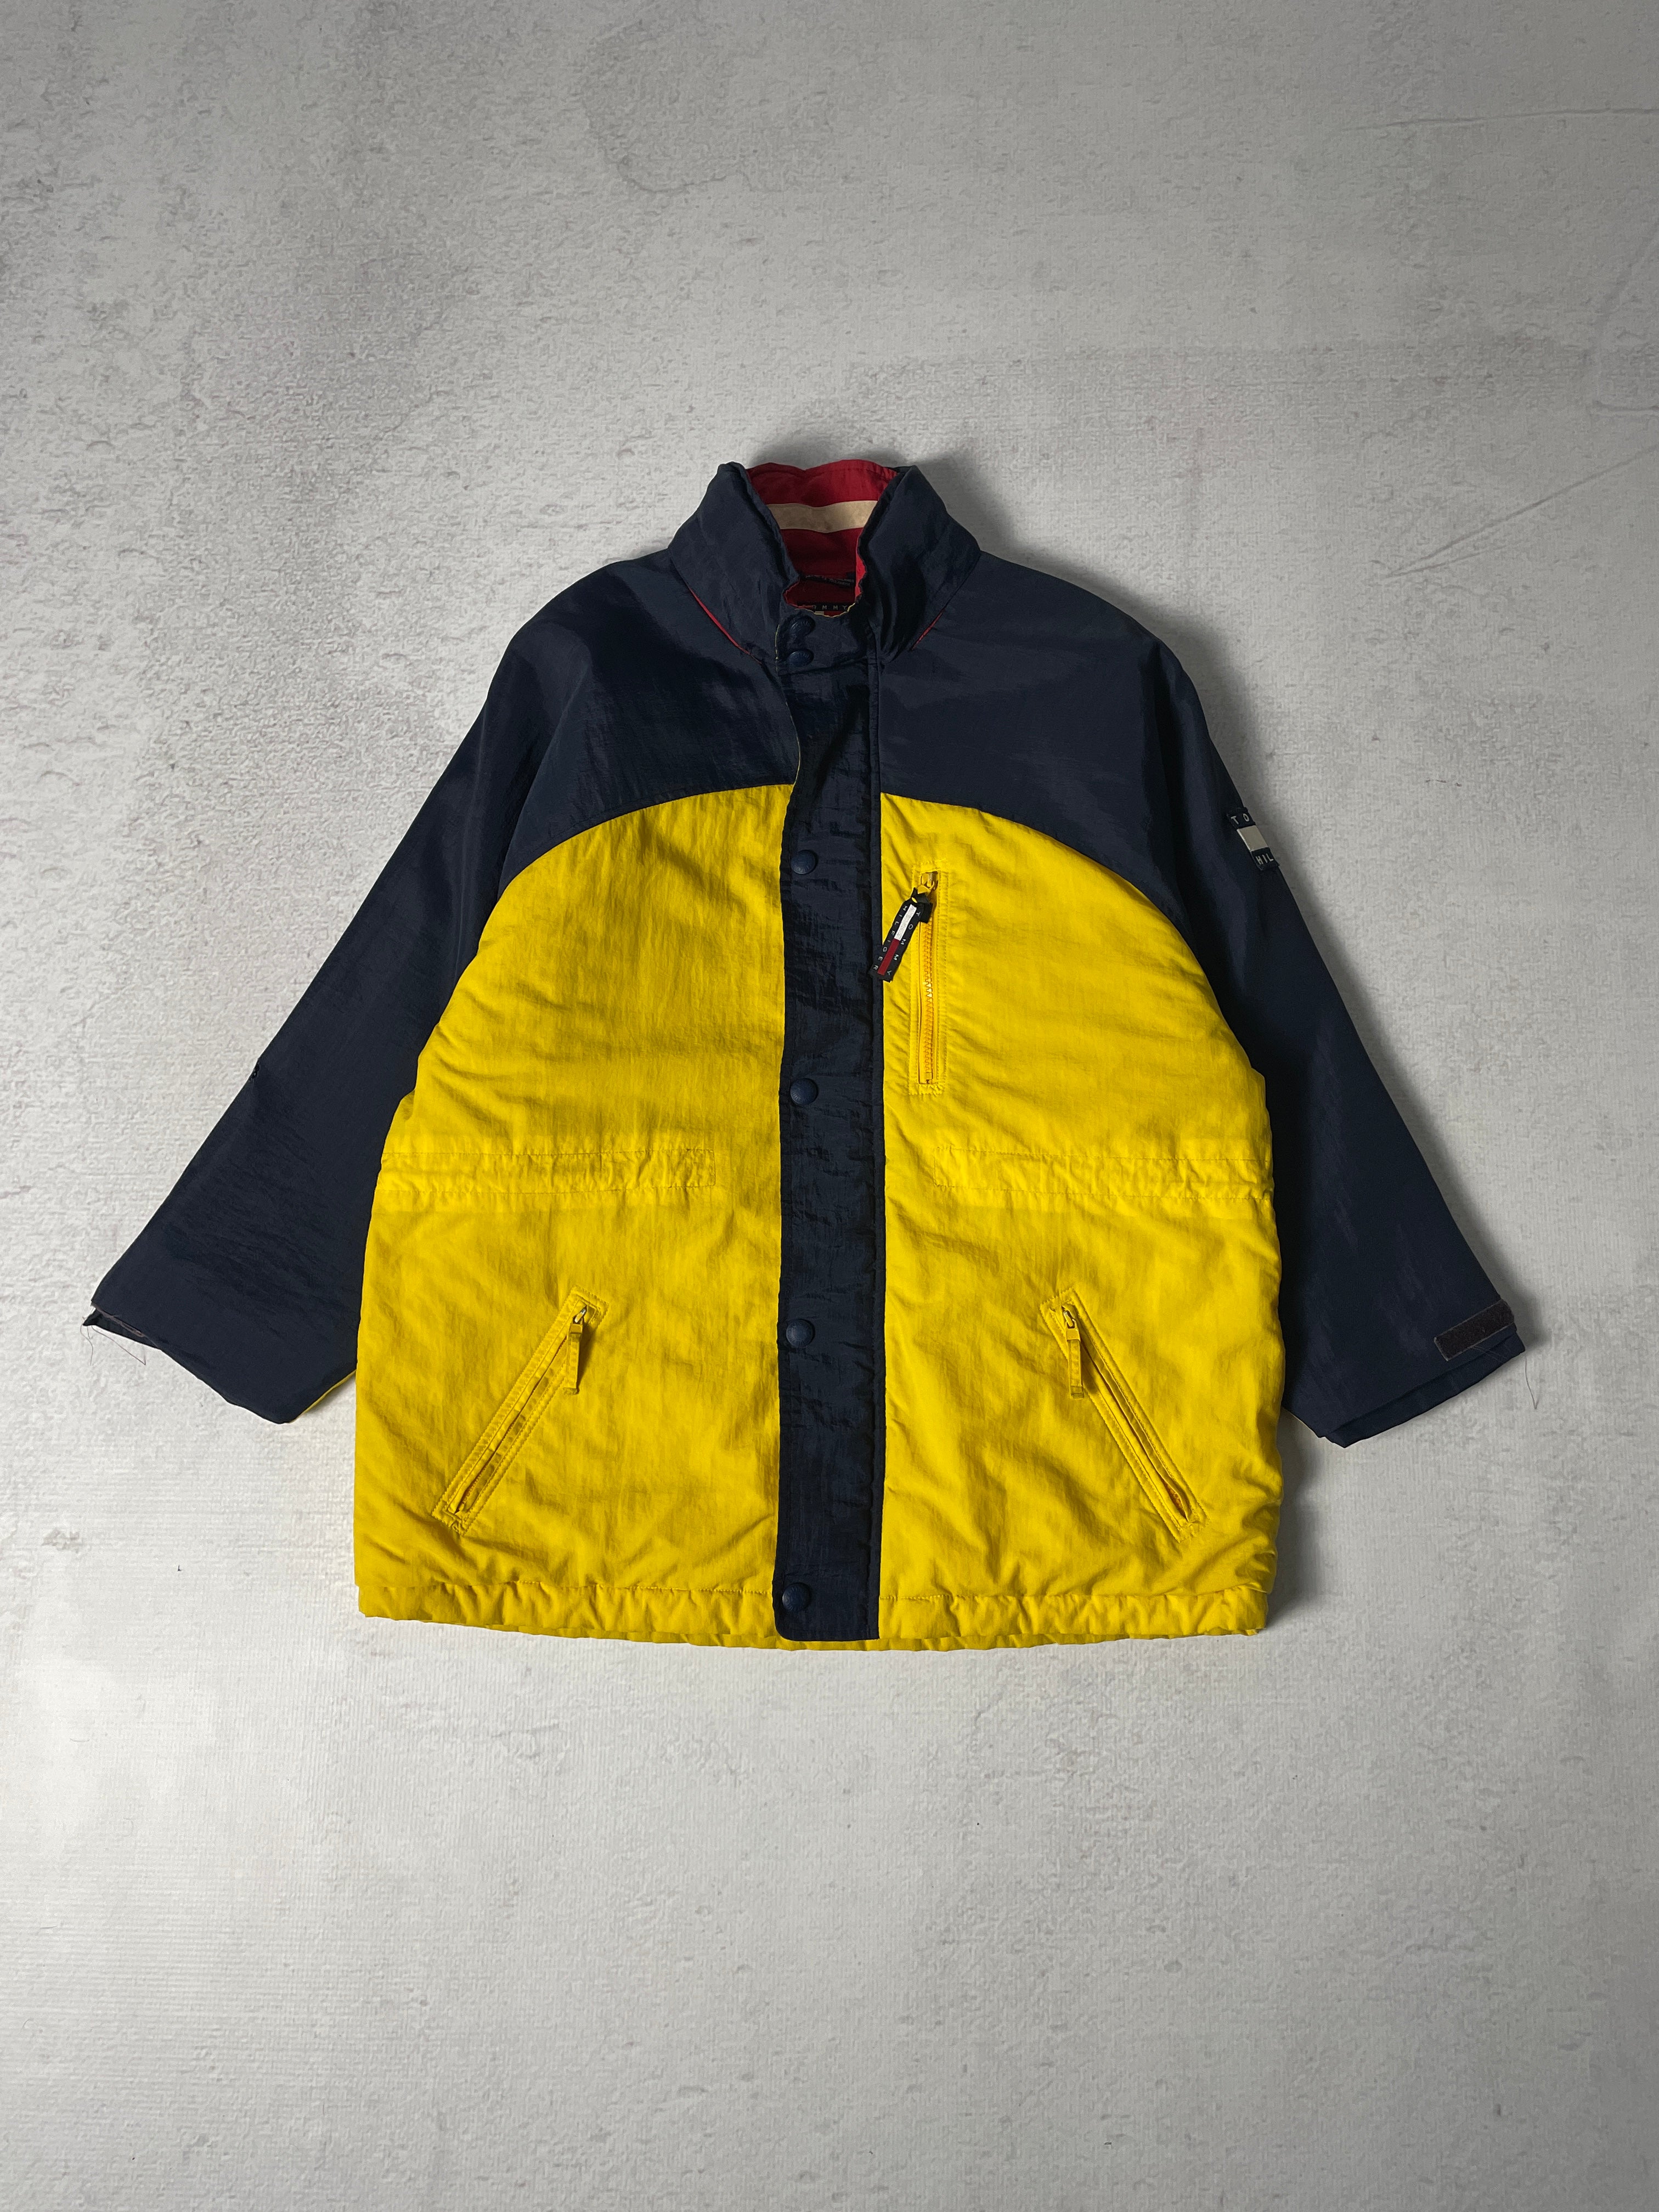 Vintage Tommy Hilfiger Insulated Jacket - Men's XL